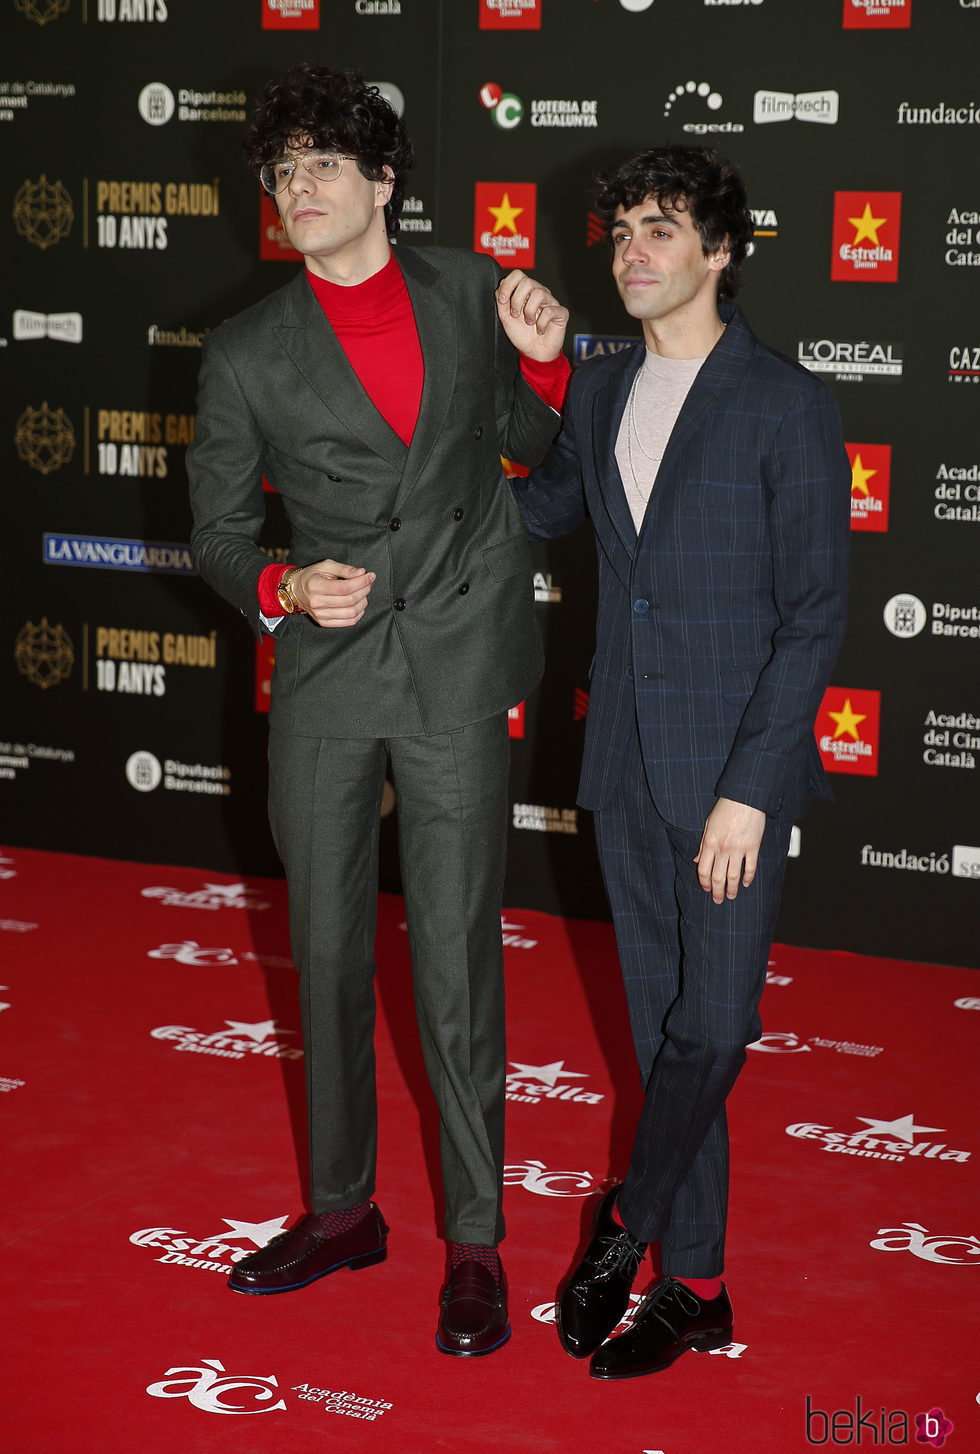 Javier Calvo y Javier Ambrossi en la alfombra roja de los Premios Gaudí 2018